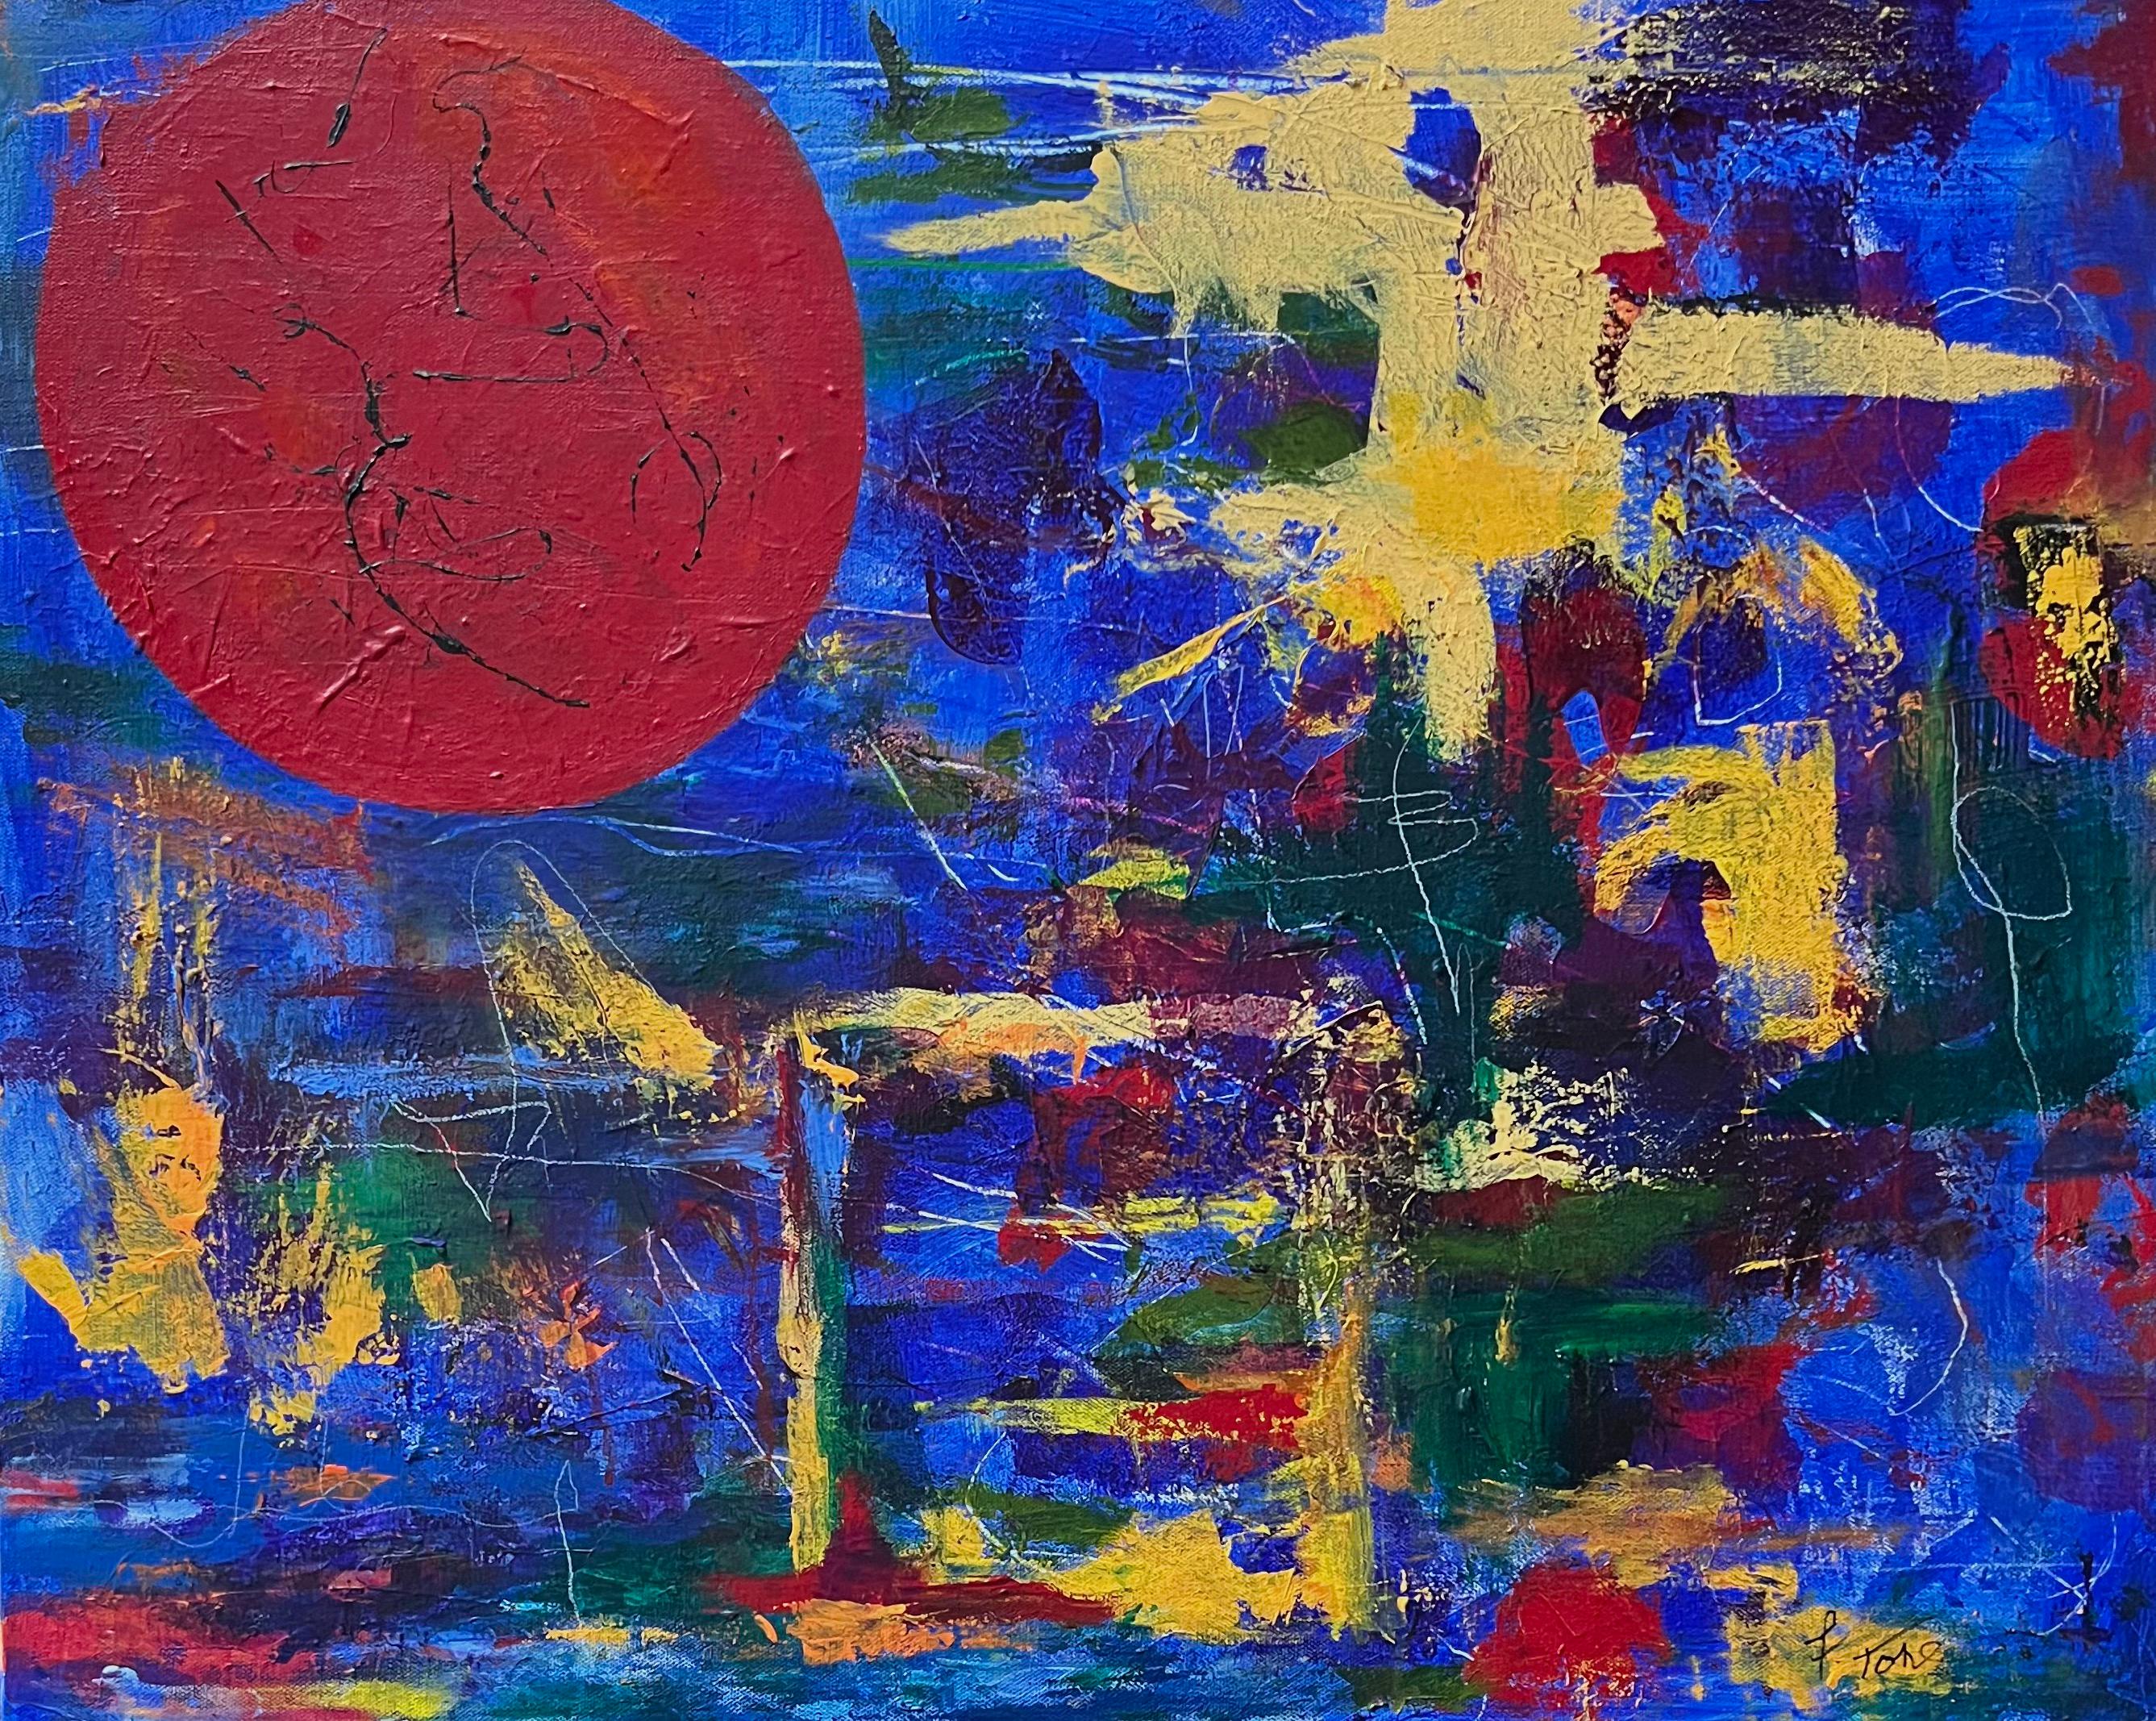 Fredda Tone Abstract Painting – Zeitgenössische kubistische Abstraktion in leuchtendem Blau, Rot und bunten Farben, sehr kühn